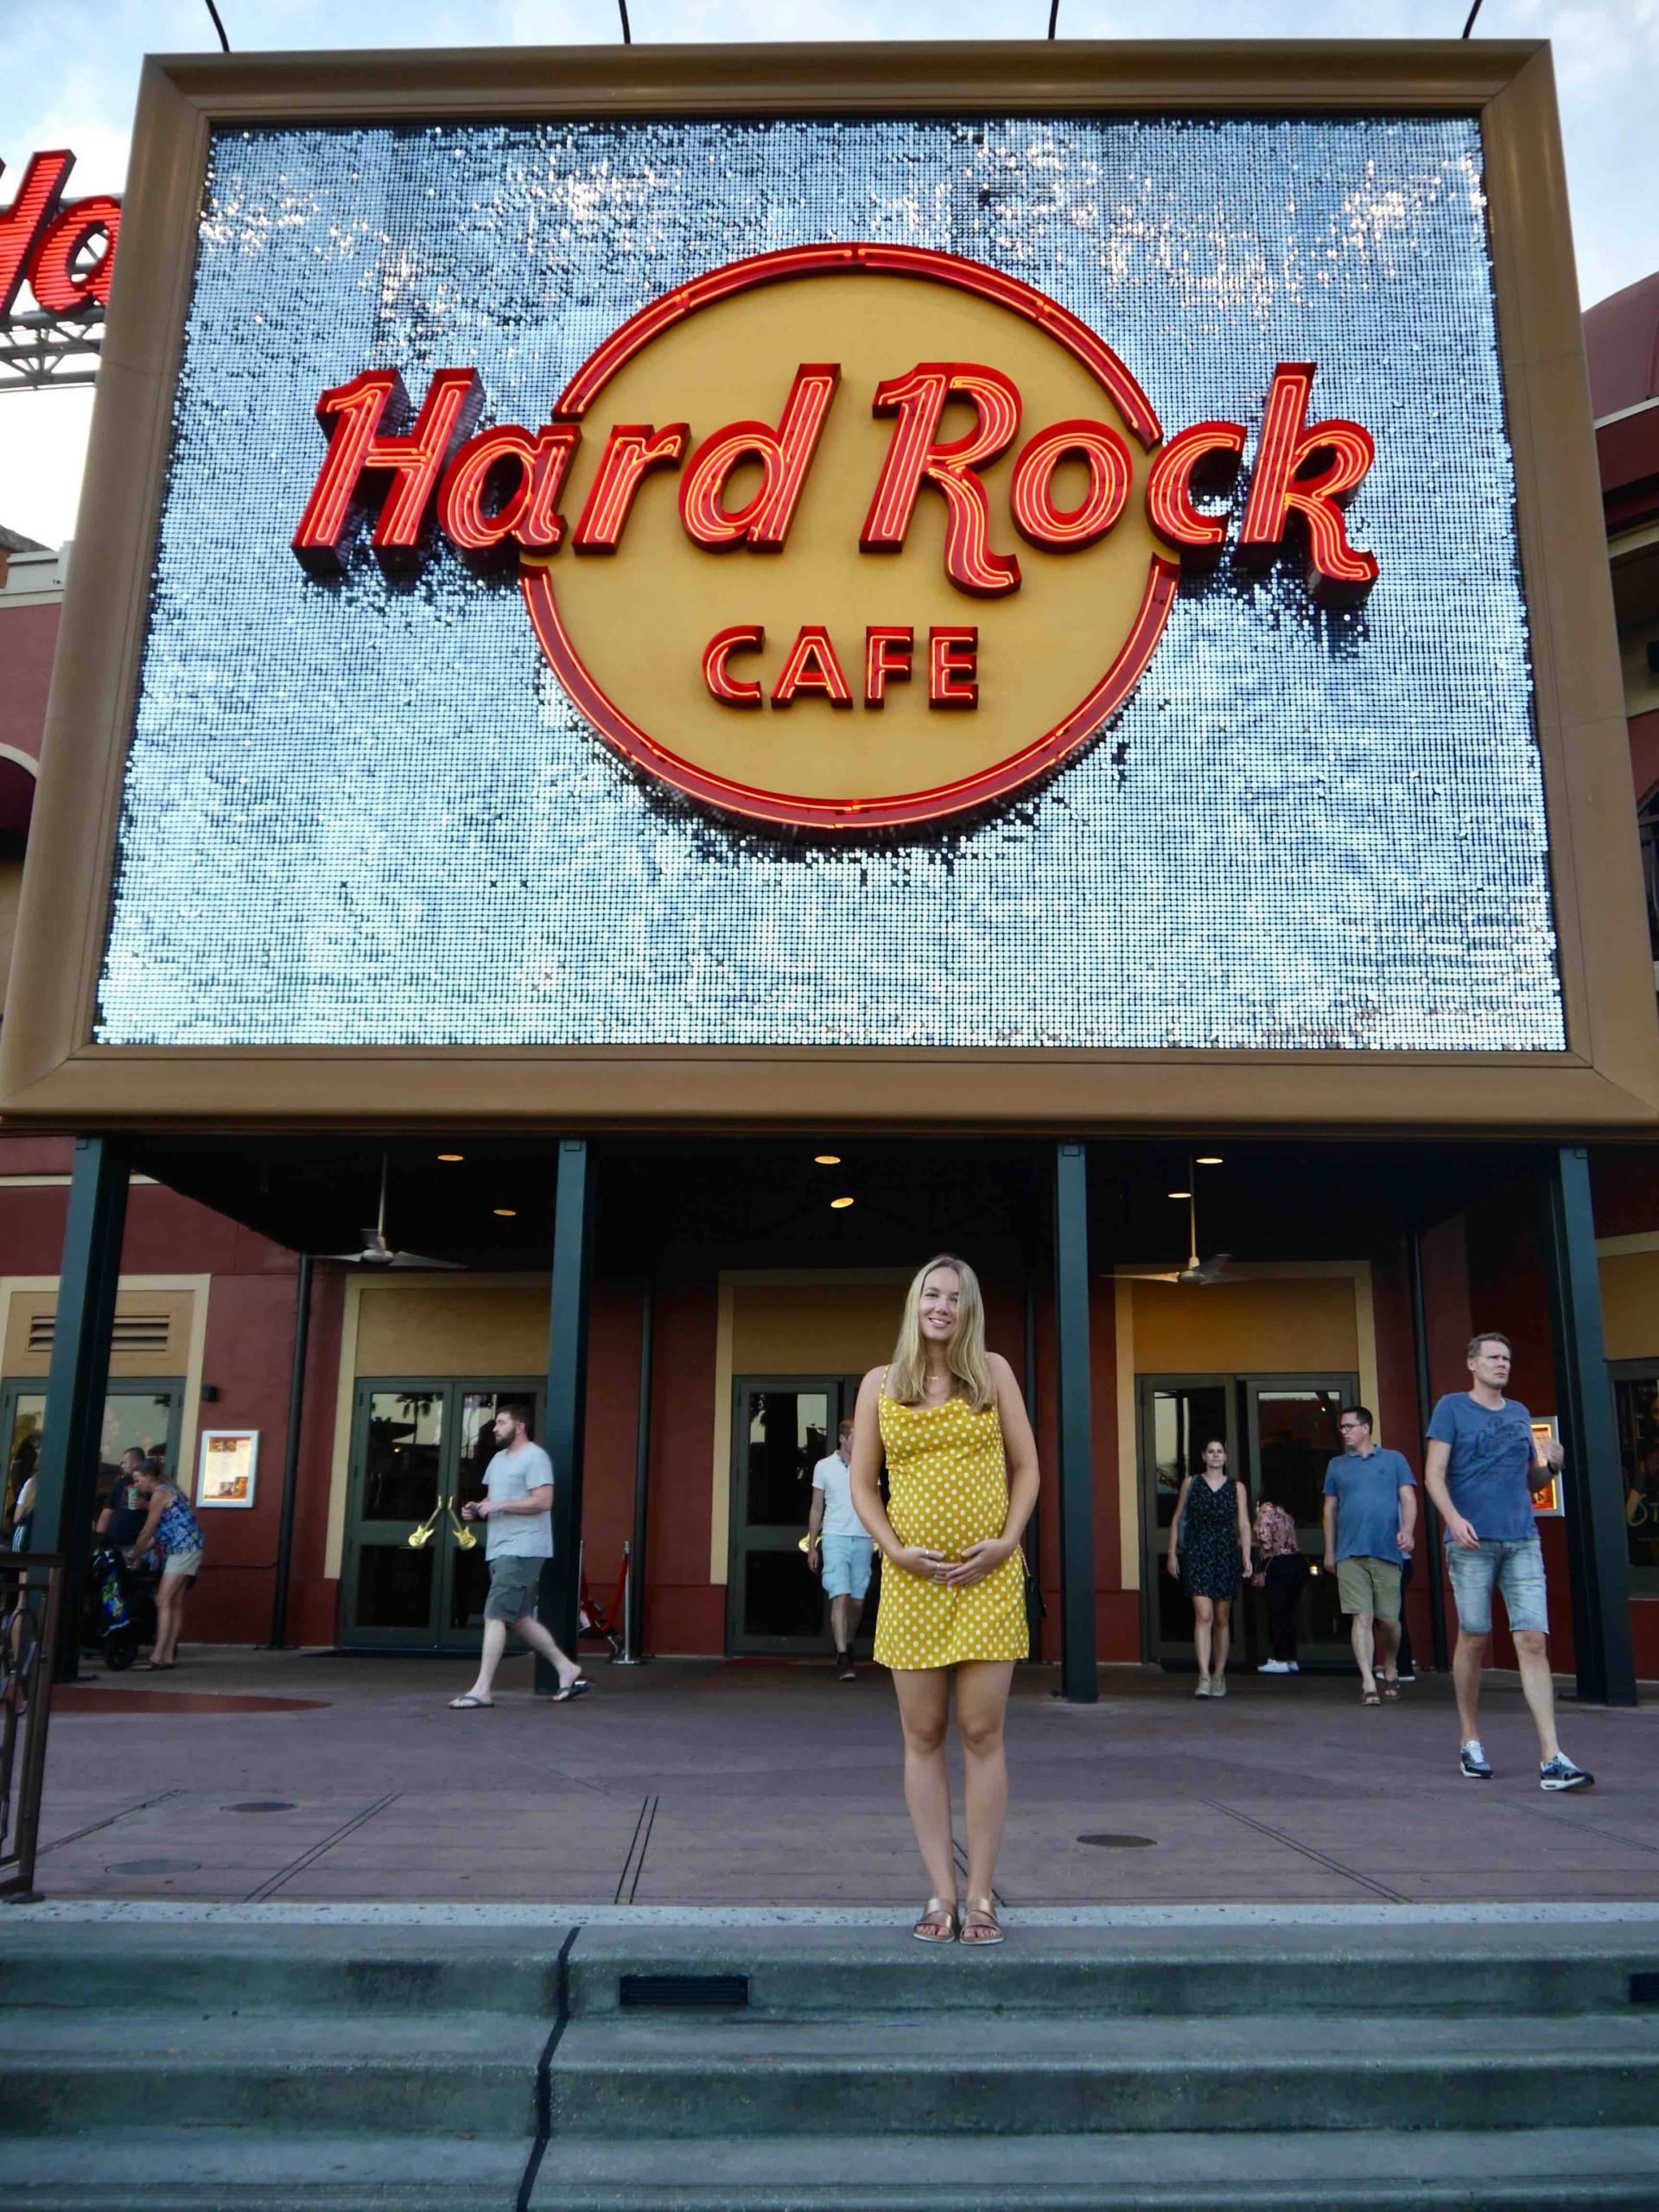 Hard Rock Café Orlando